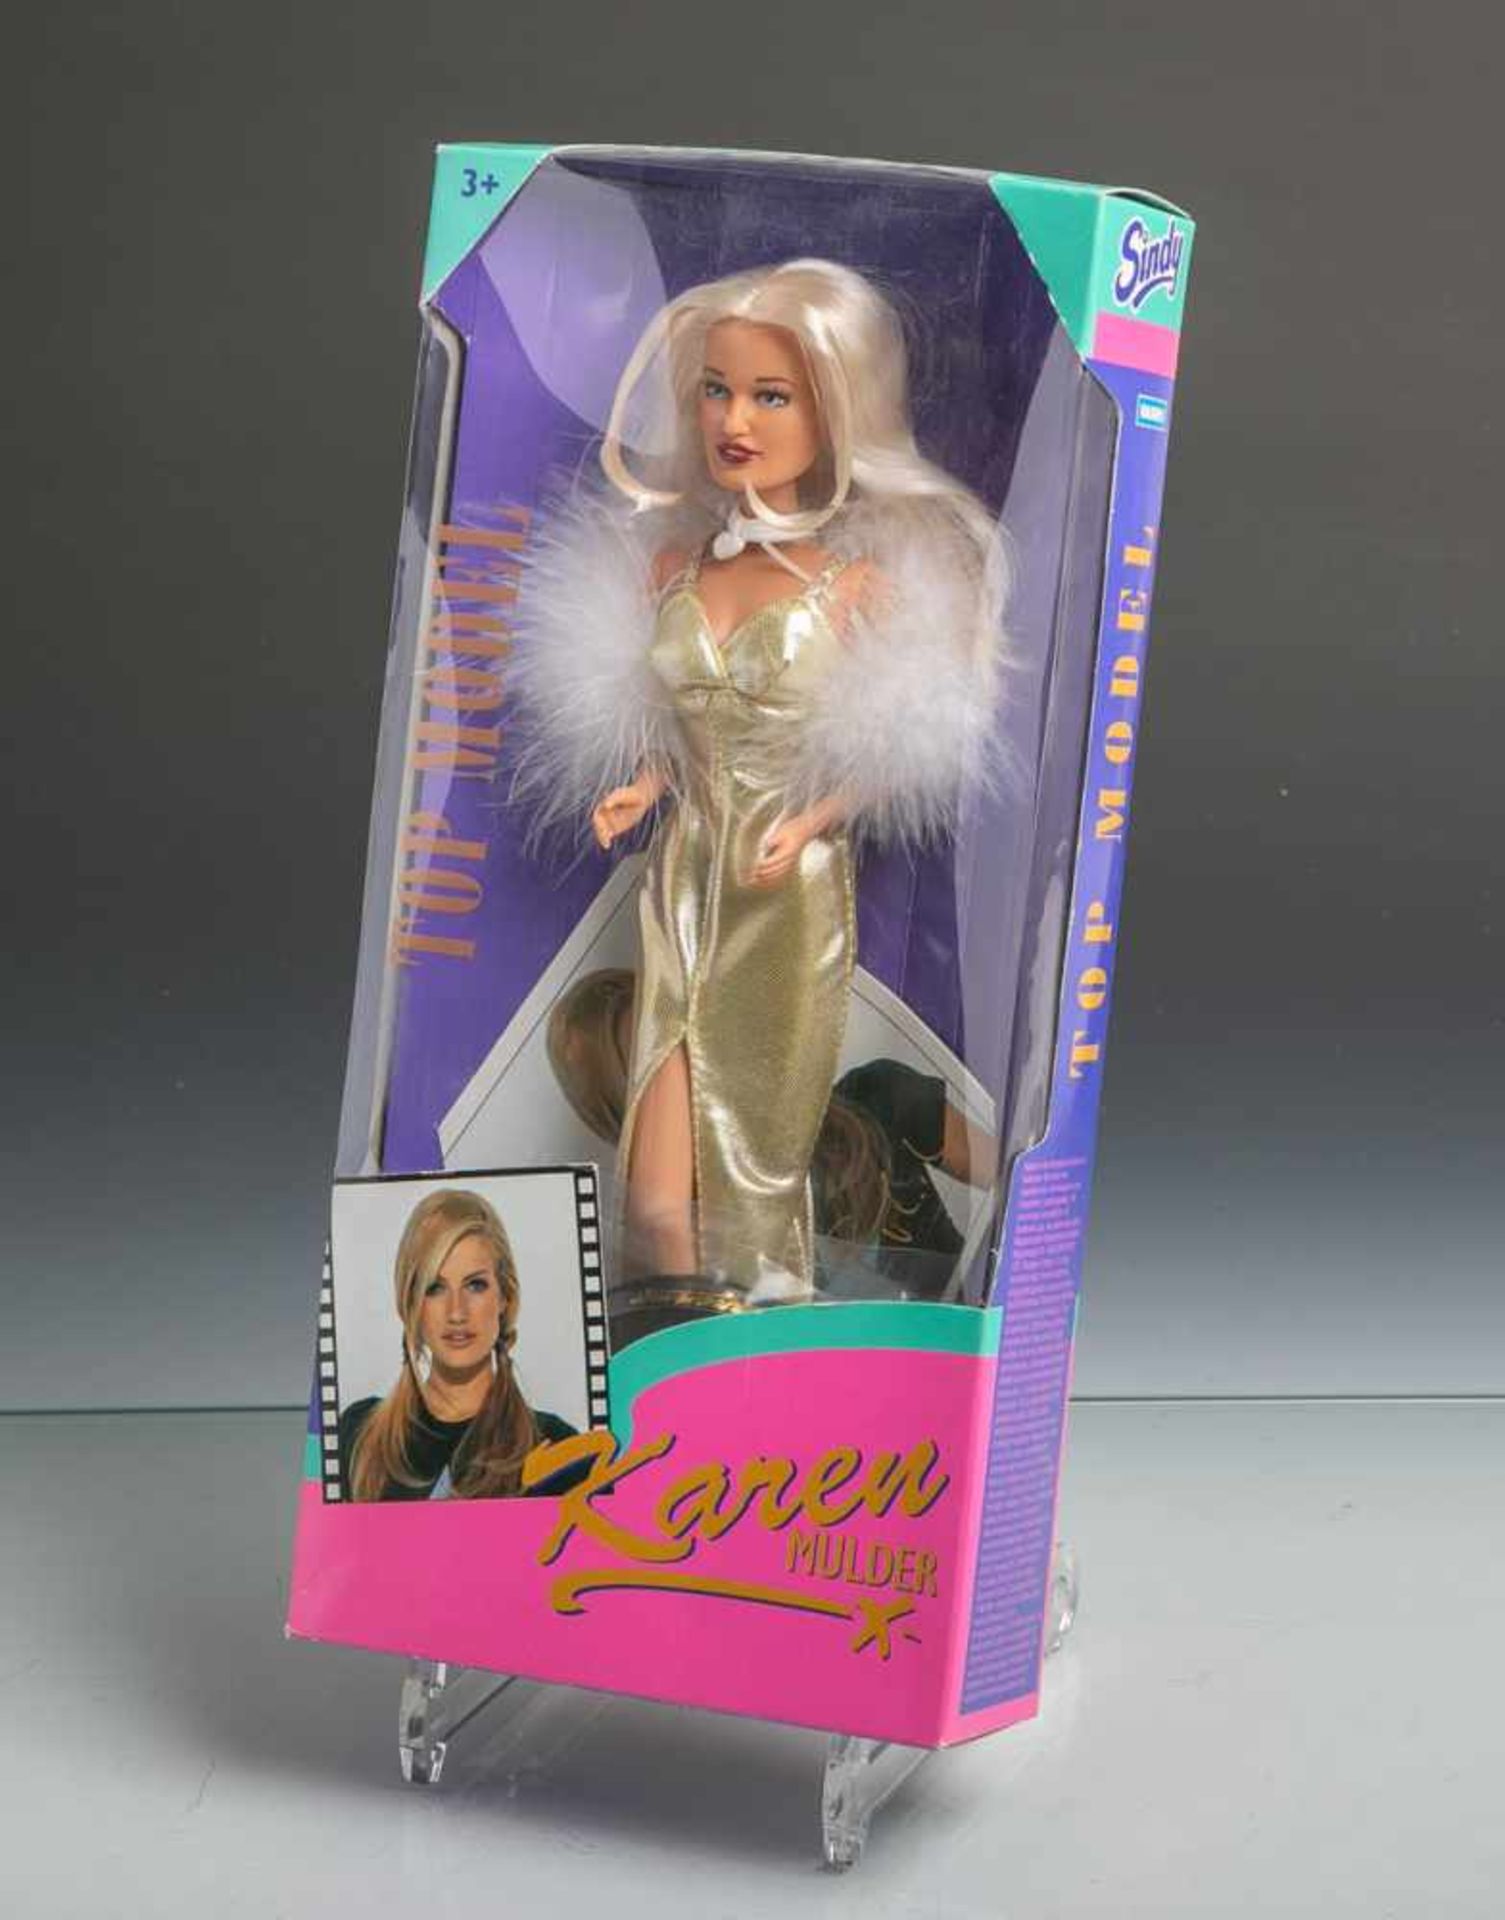 Modelpuppe "Karen Mulder" (Hasbro, 1995), Top Model Collection, orig. Zubehör inkl.Infokarte u.